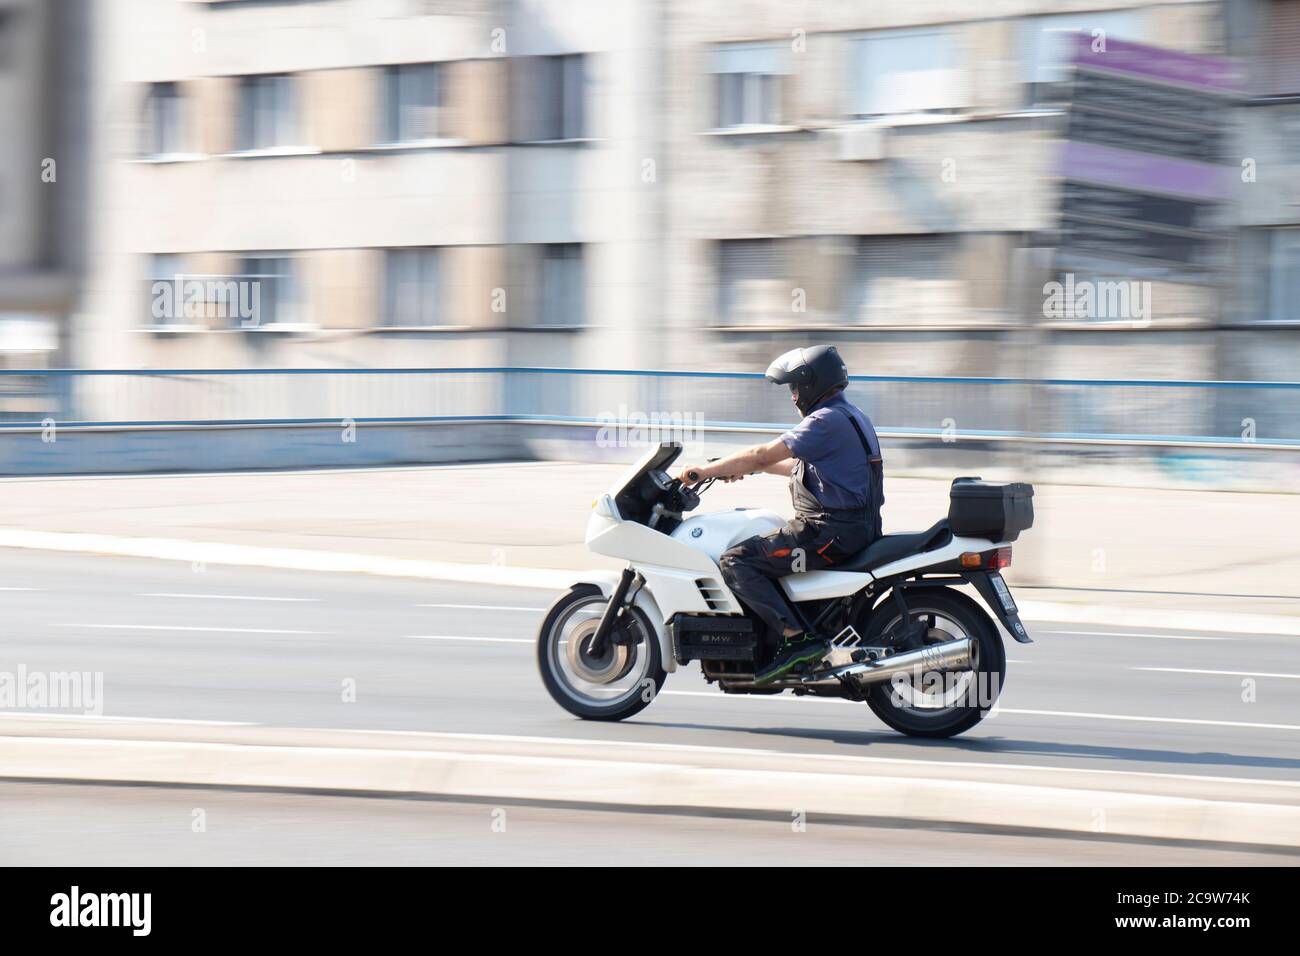 Belgrado, Serbia - 31 luglio 2020: Uomo meccanico in lavoro in generale a cavallo di una moto veloce in una strada vuota della città da quartiere residenziale Foto Stock